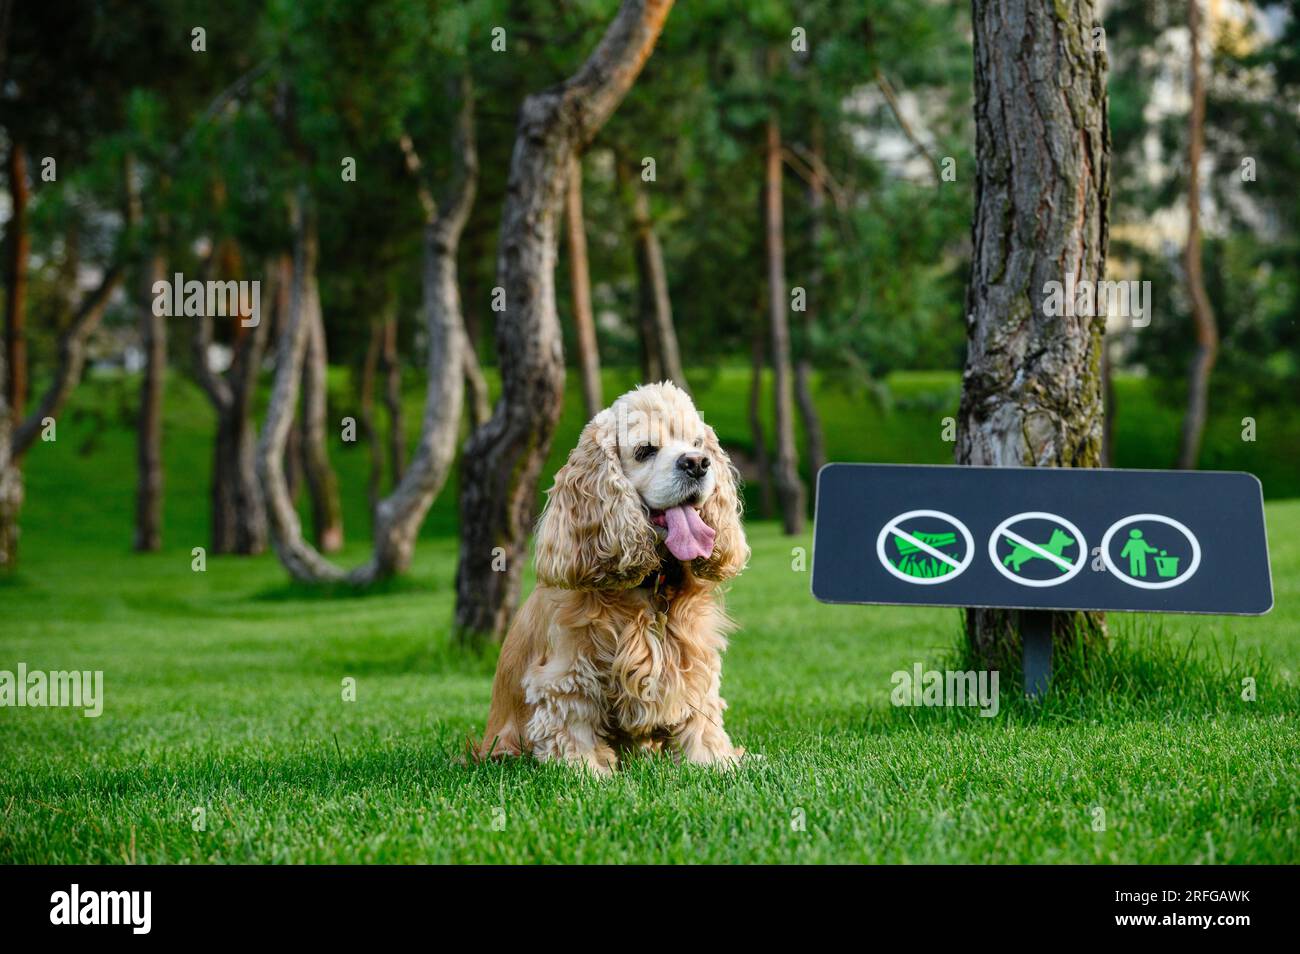 Le chien se repose assis sur l'herbe verte dans le parc. Panneau interdisant aux chiens de marcher en arrière-plan. Banque D'Images